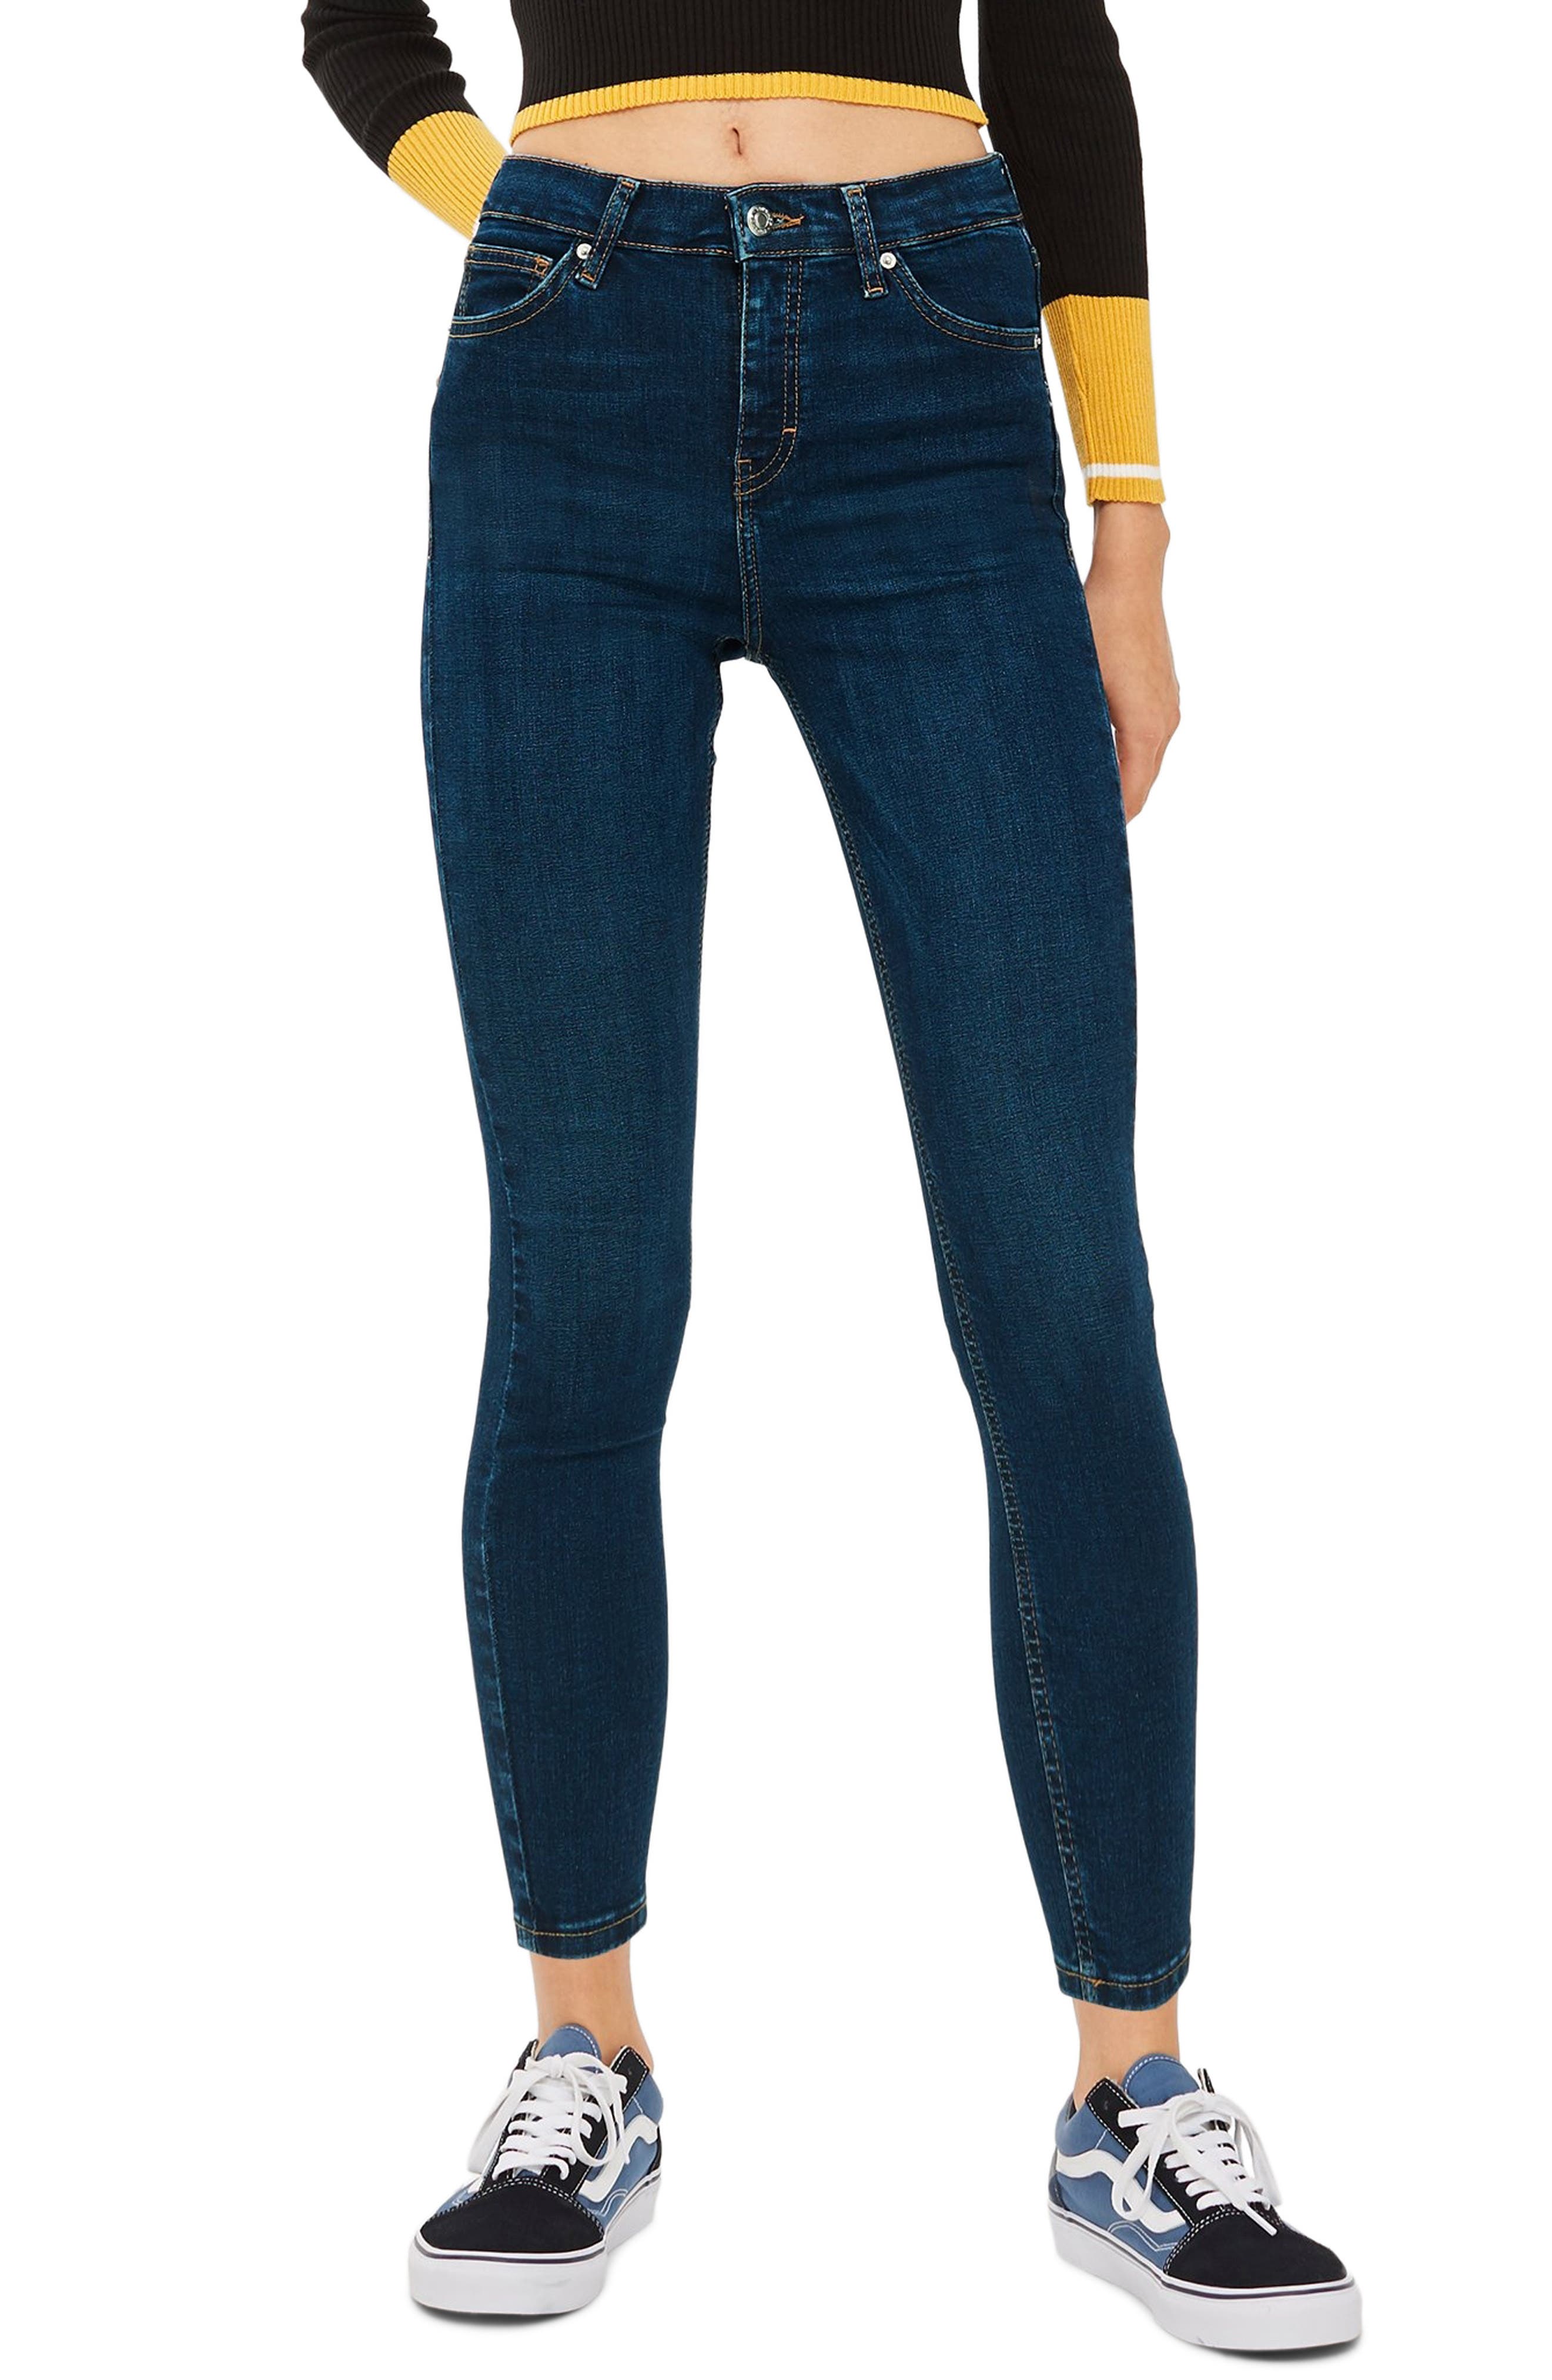 topshop jamie jeans sale